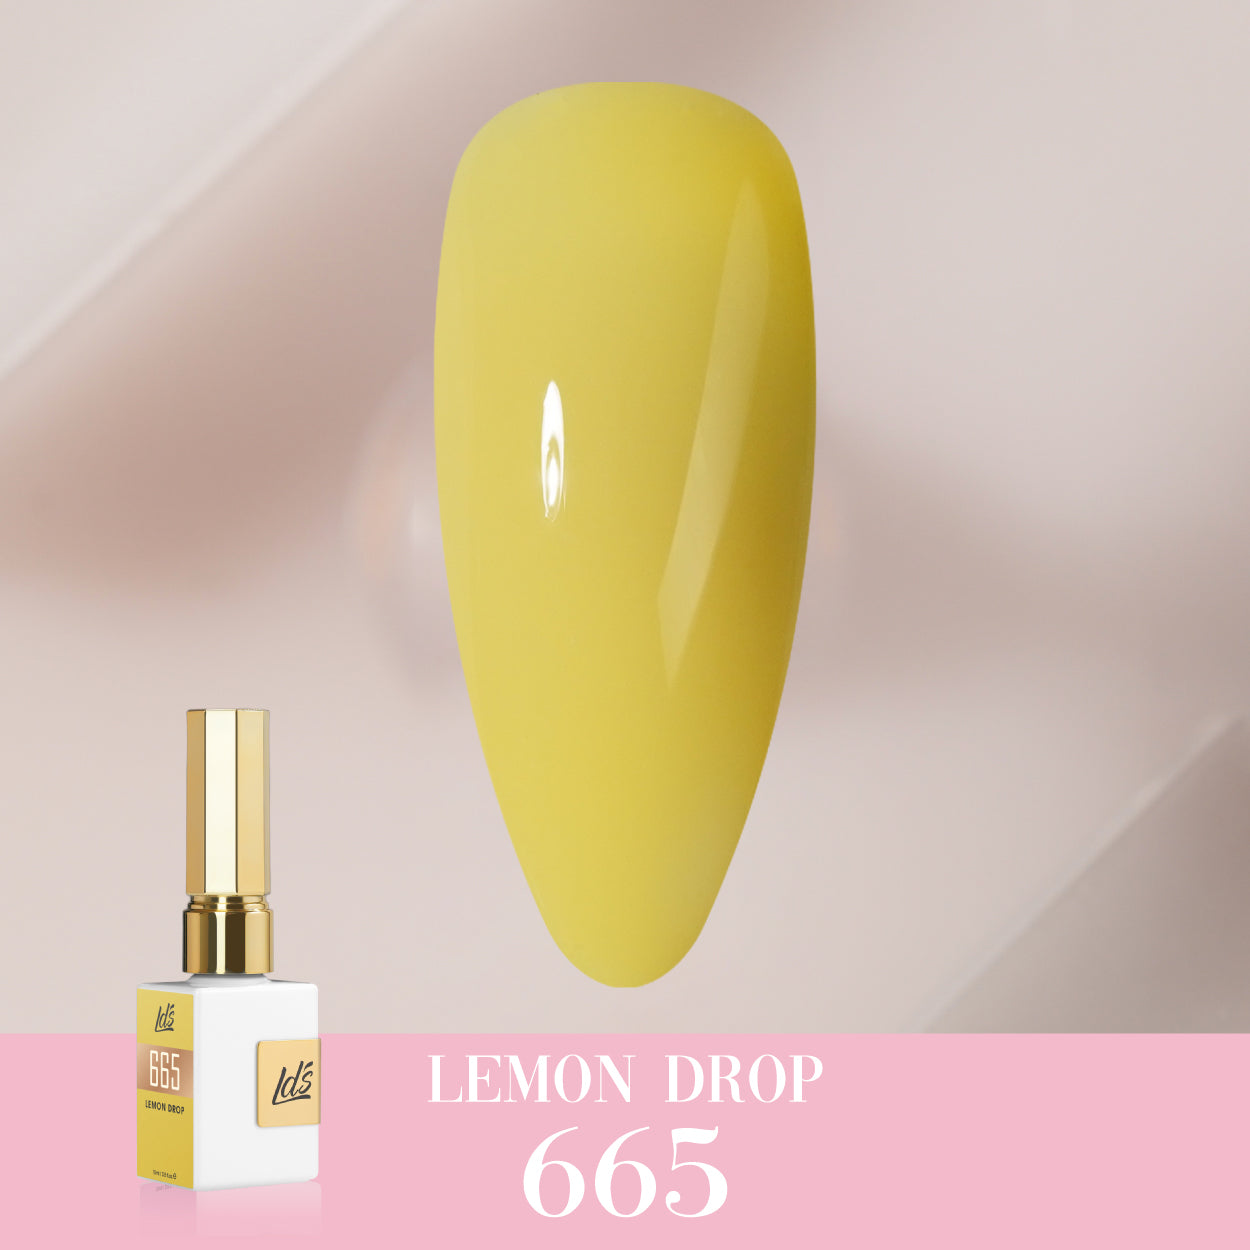 LDS Color Craze Collection - 665 Lemon Drop - Gel Polish 0.5oz